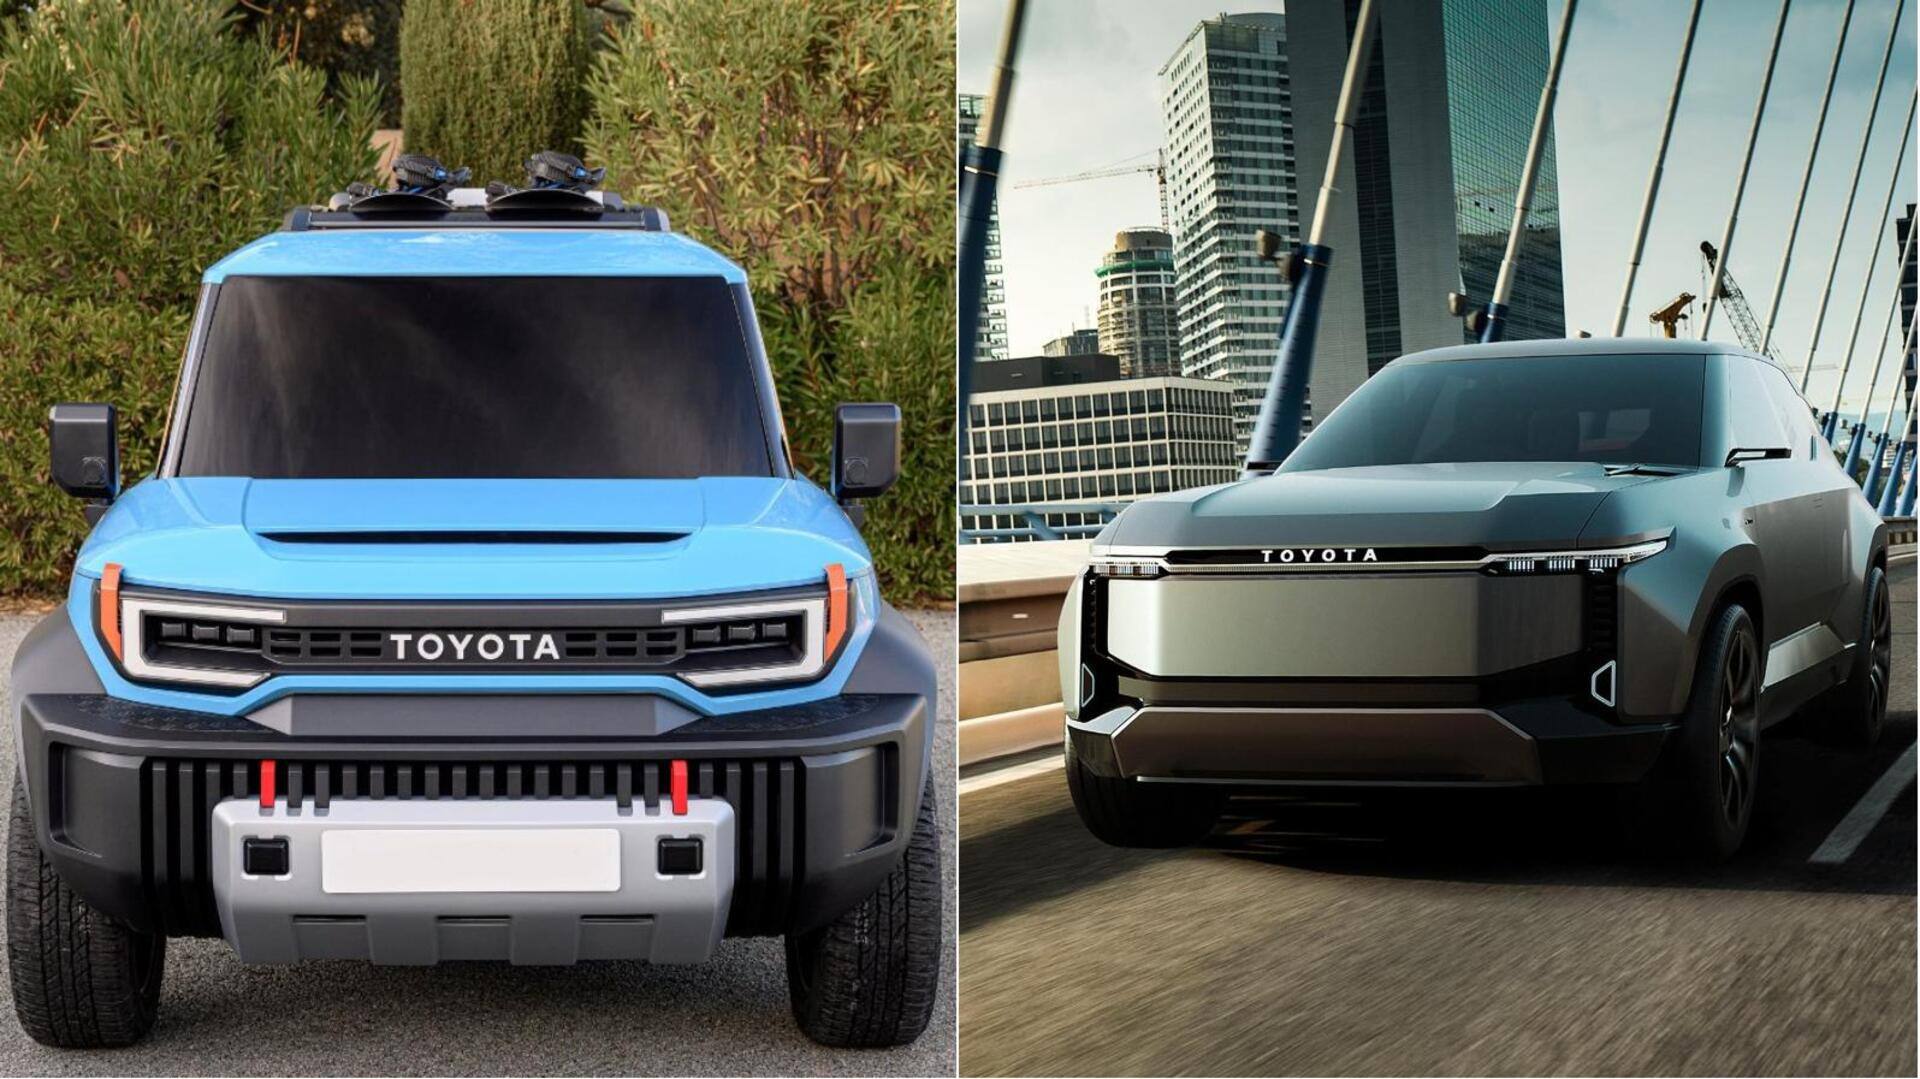 टोयोटा लैंड क्रूजर रेंज में जुड़ेंगी 2 नई इलेक्ट्रिक SUV, जानिए क्या होगा इनमें खास 